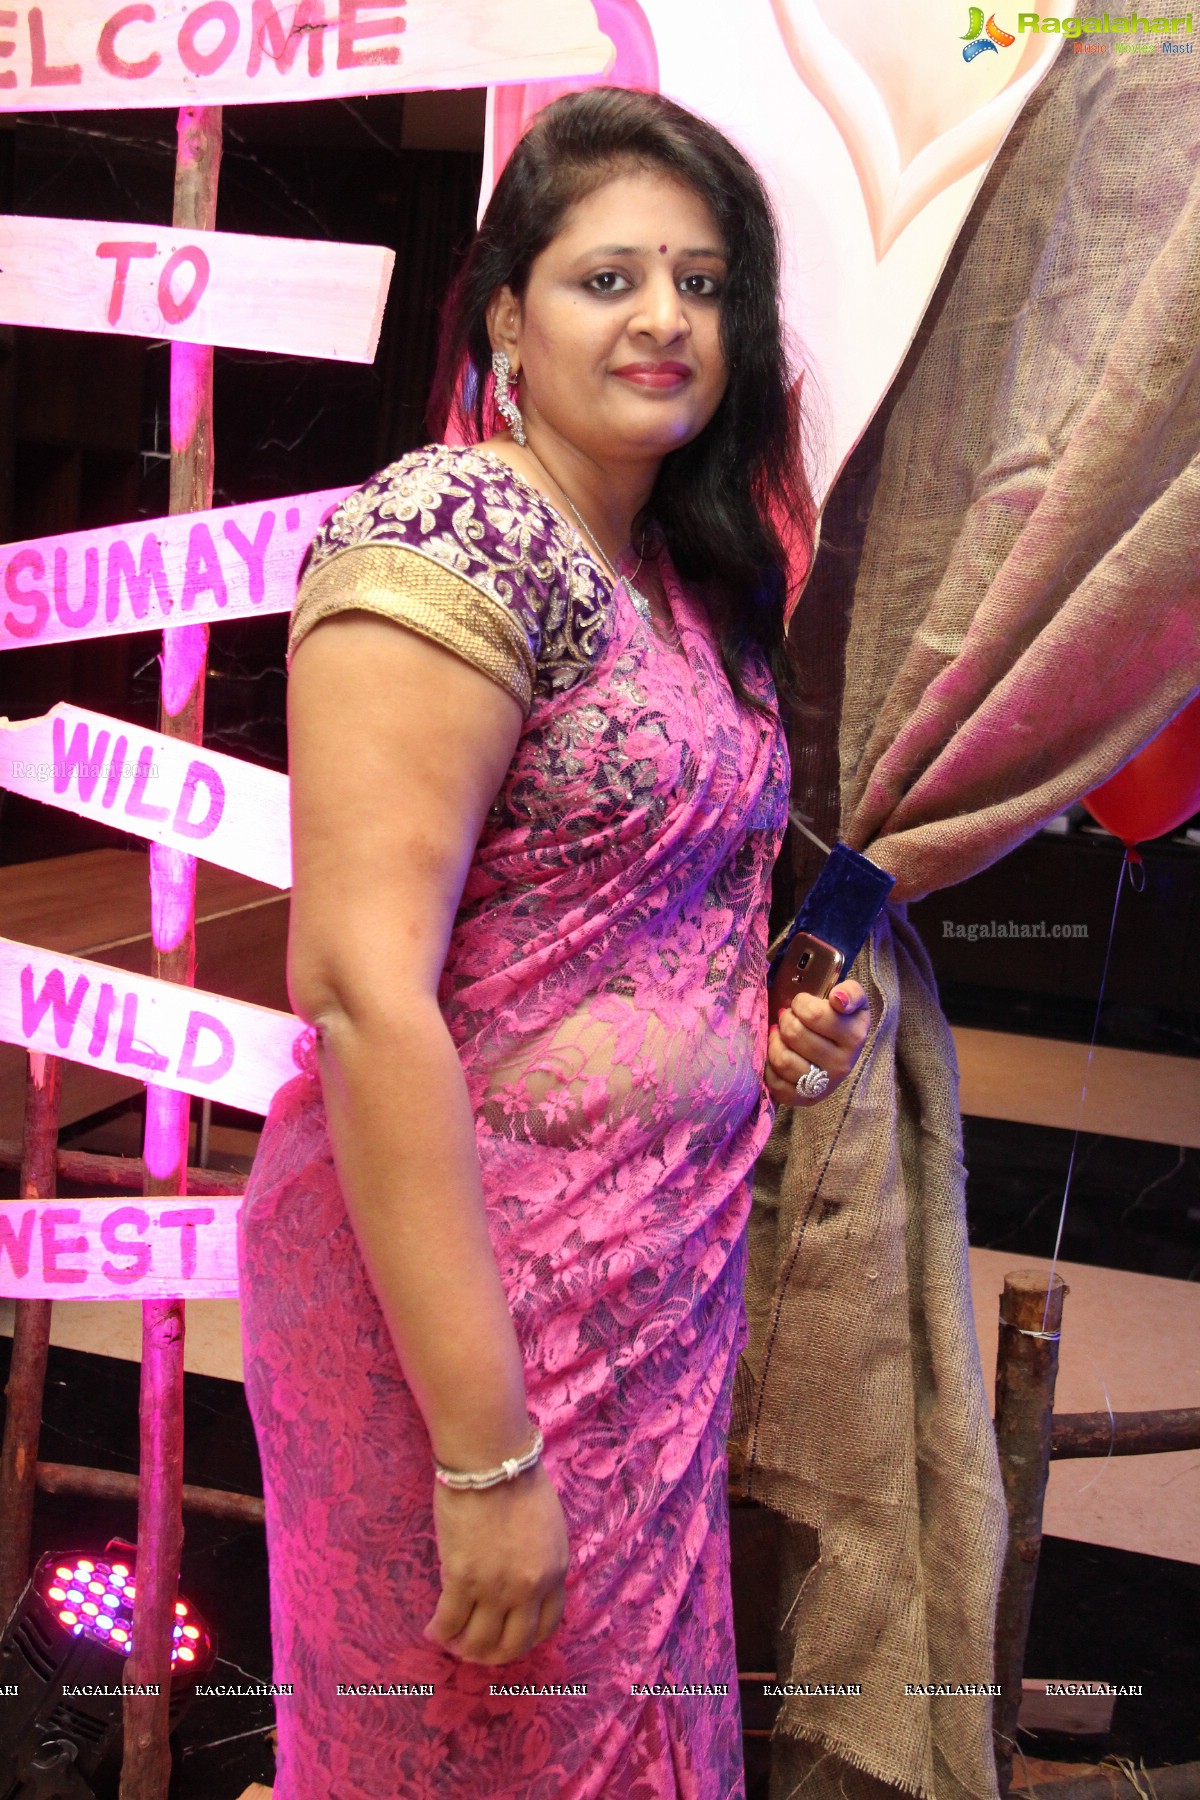 Sumay Birthday Party 2014 at Taj Vivanta, Hyderabad